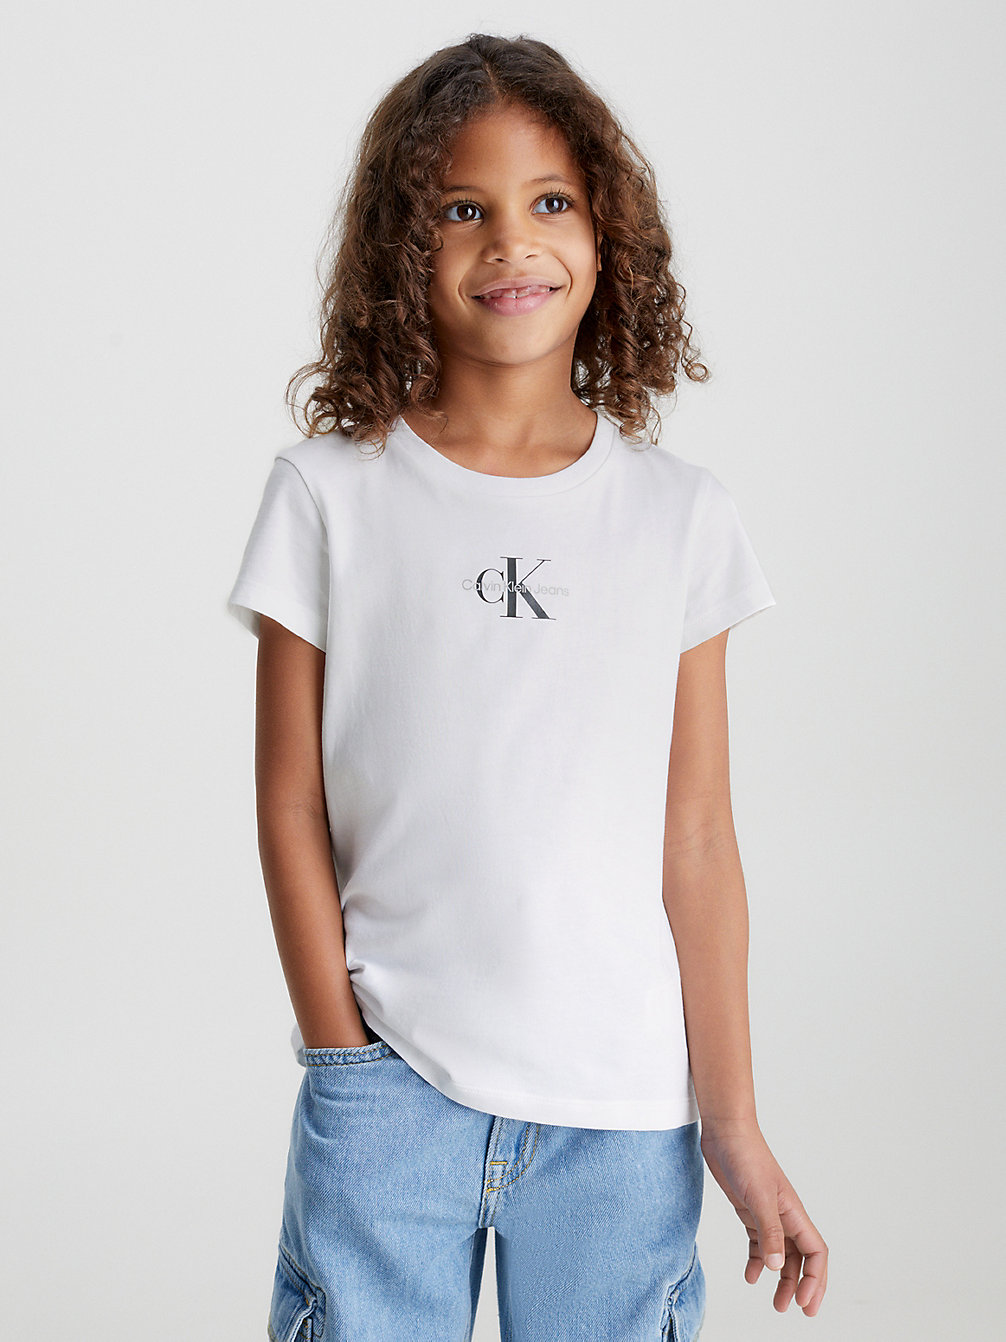 BRIGHT WHITE > Schmales T-Shirt Aus Bio-Baumwolle > undefined girls - Calvin Klein